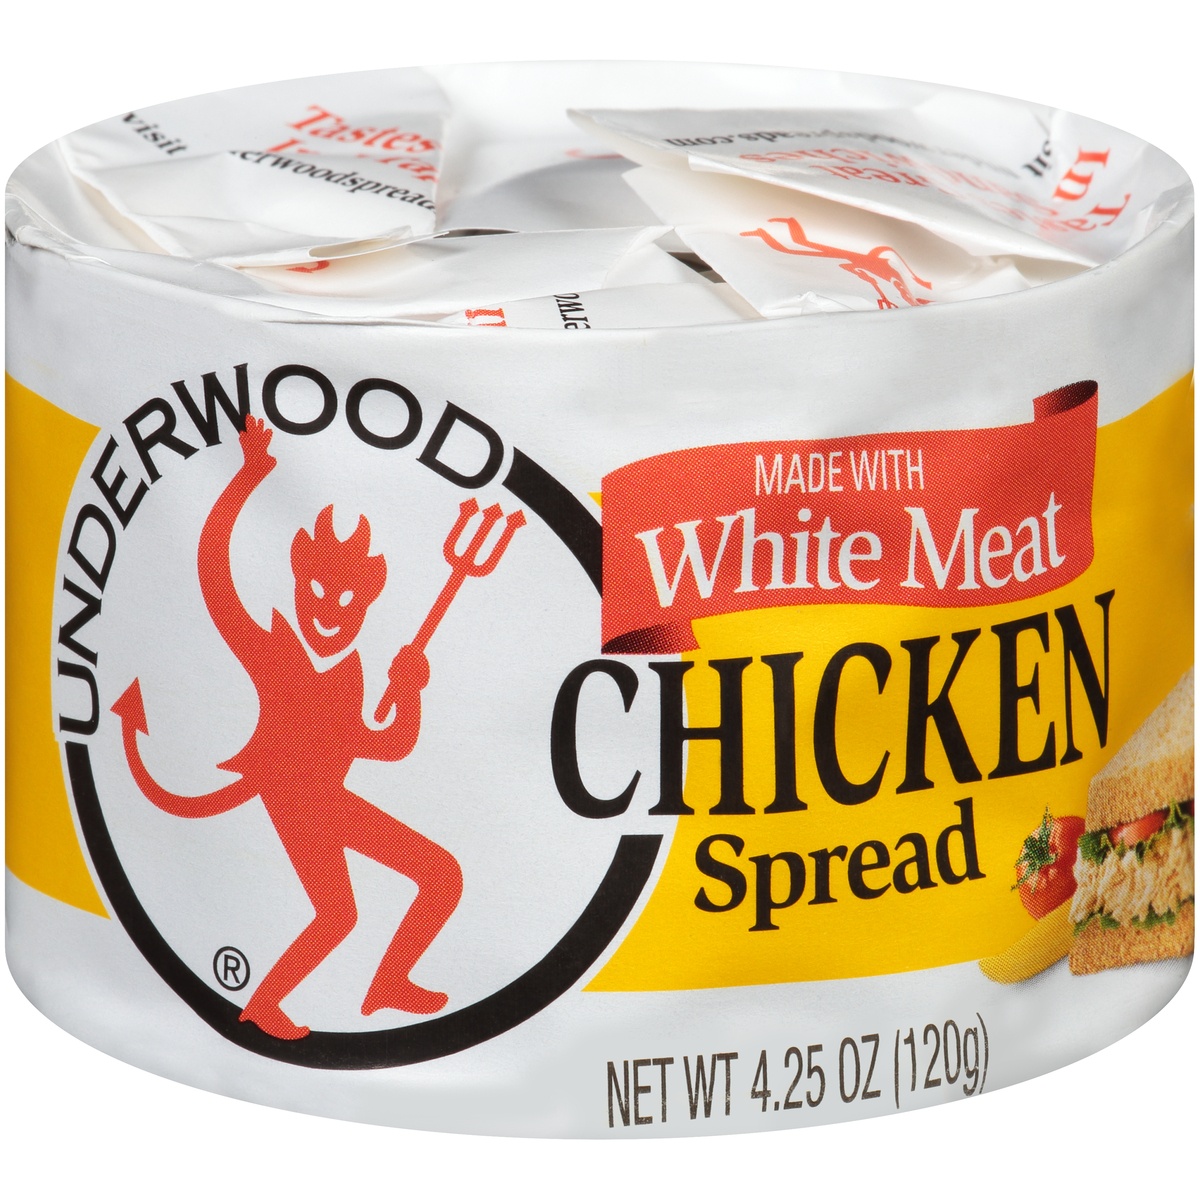 slide 1 of 1, Underwood White Meat Chicken Spread, 4.25 oz